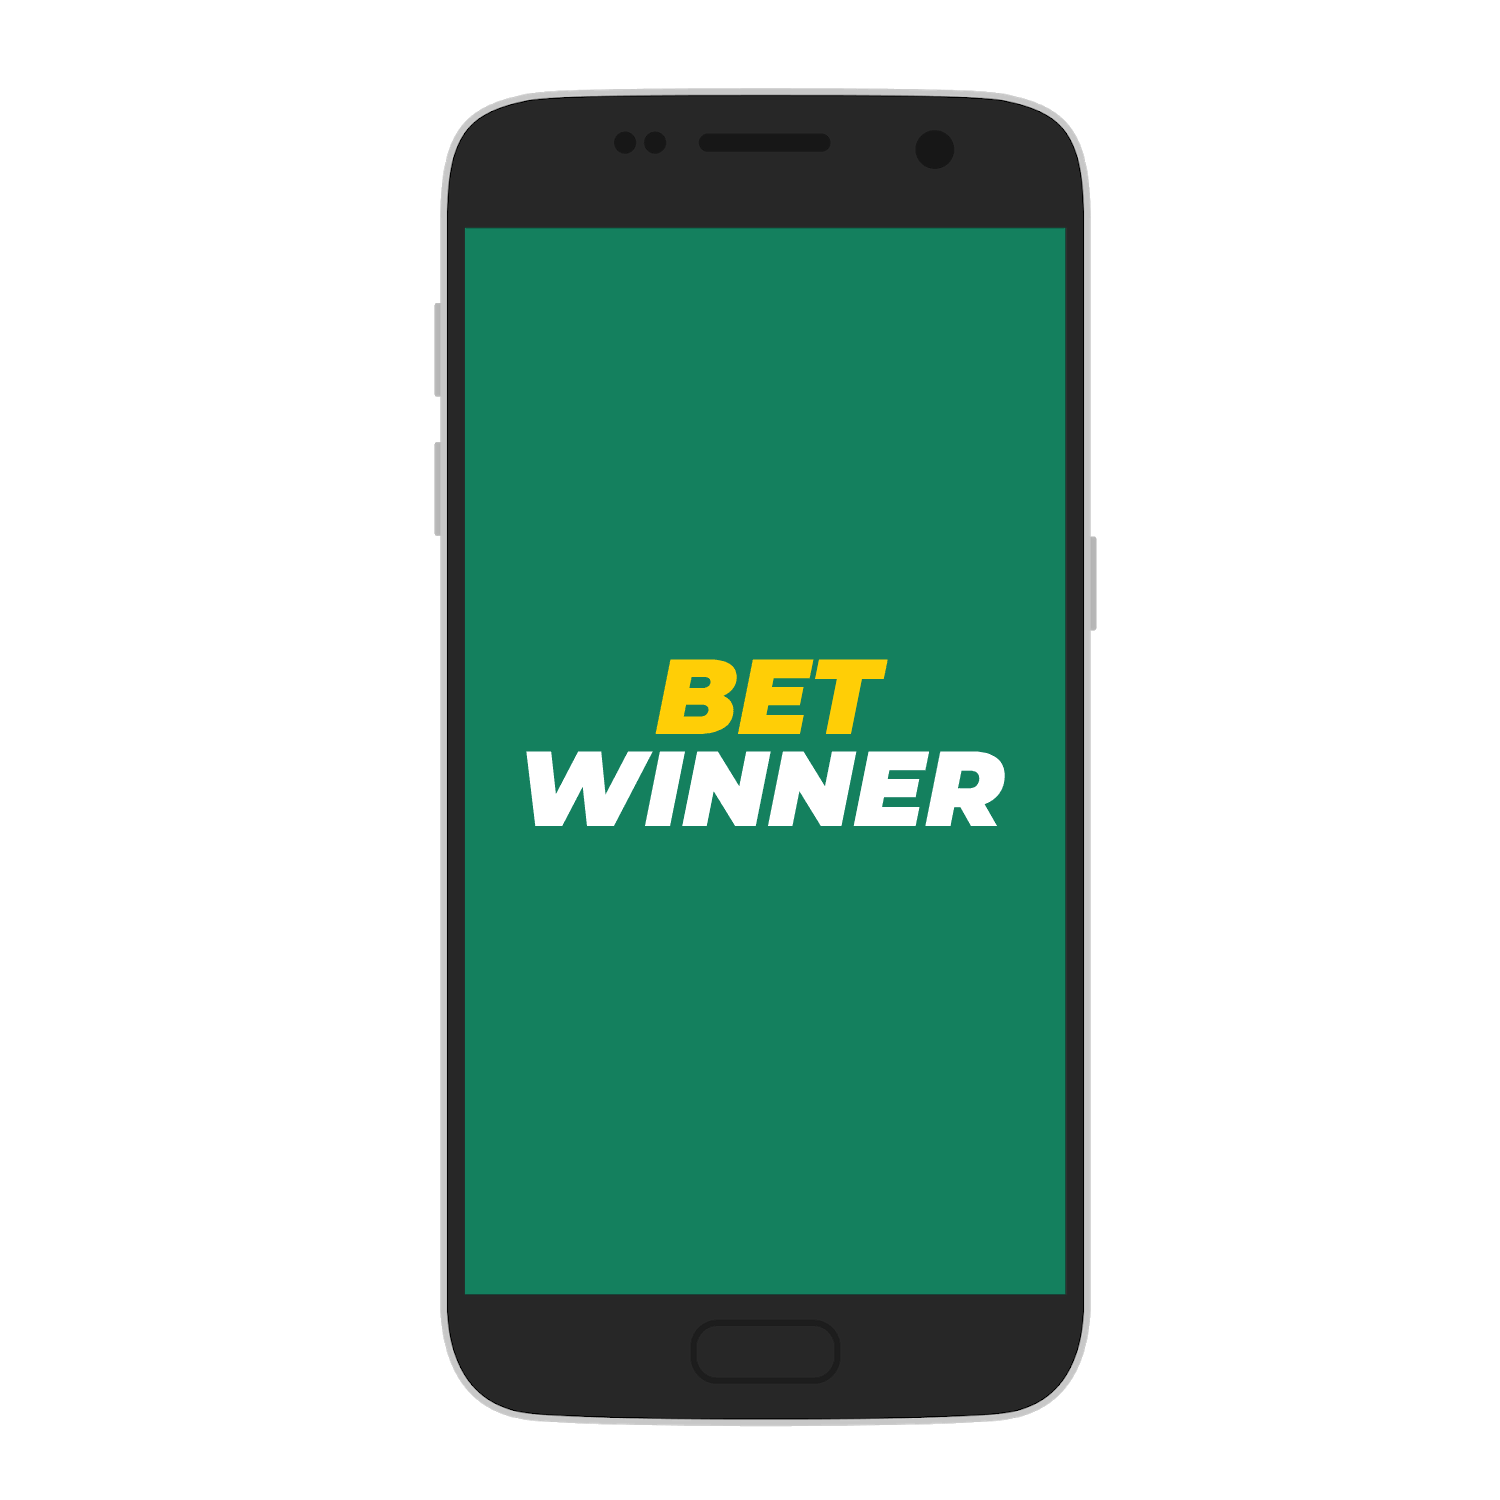 Betwinner ऐप इंस्टॉल करें और अपने मोबाइल फोन के माध्यम से खेल पर सट्टेबाजी शुरू करें।